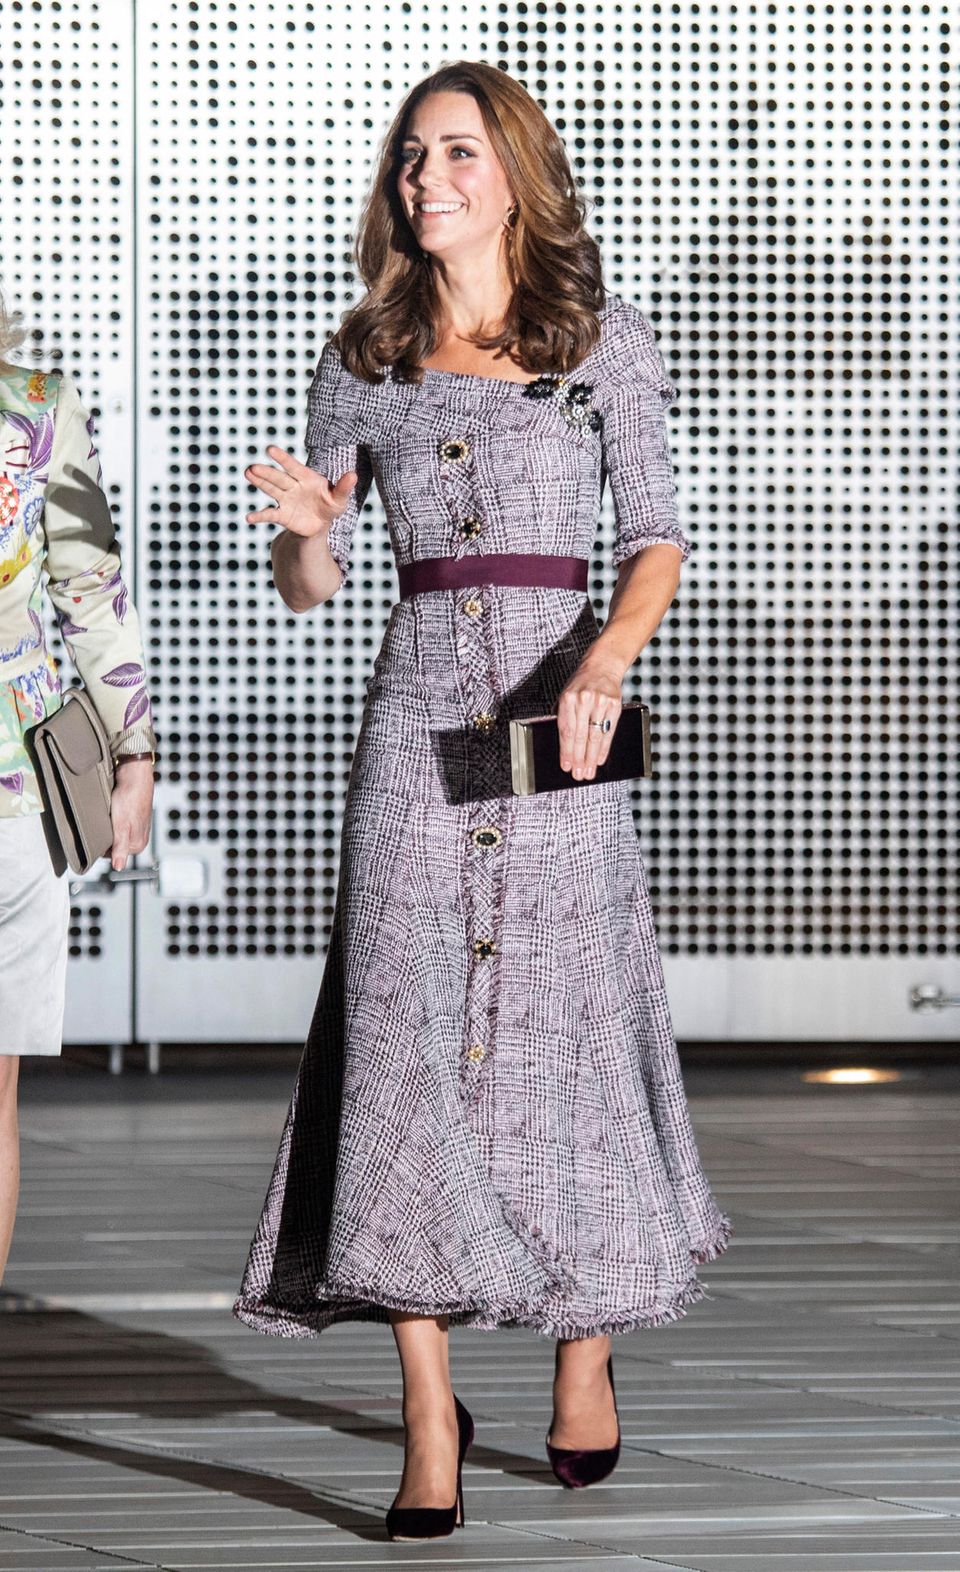 Gleiche Outfits der Royals: Herzogin Kate im Tweedkleid